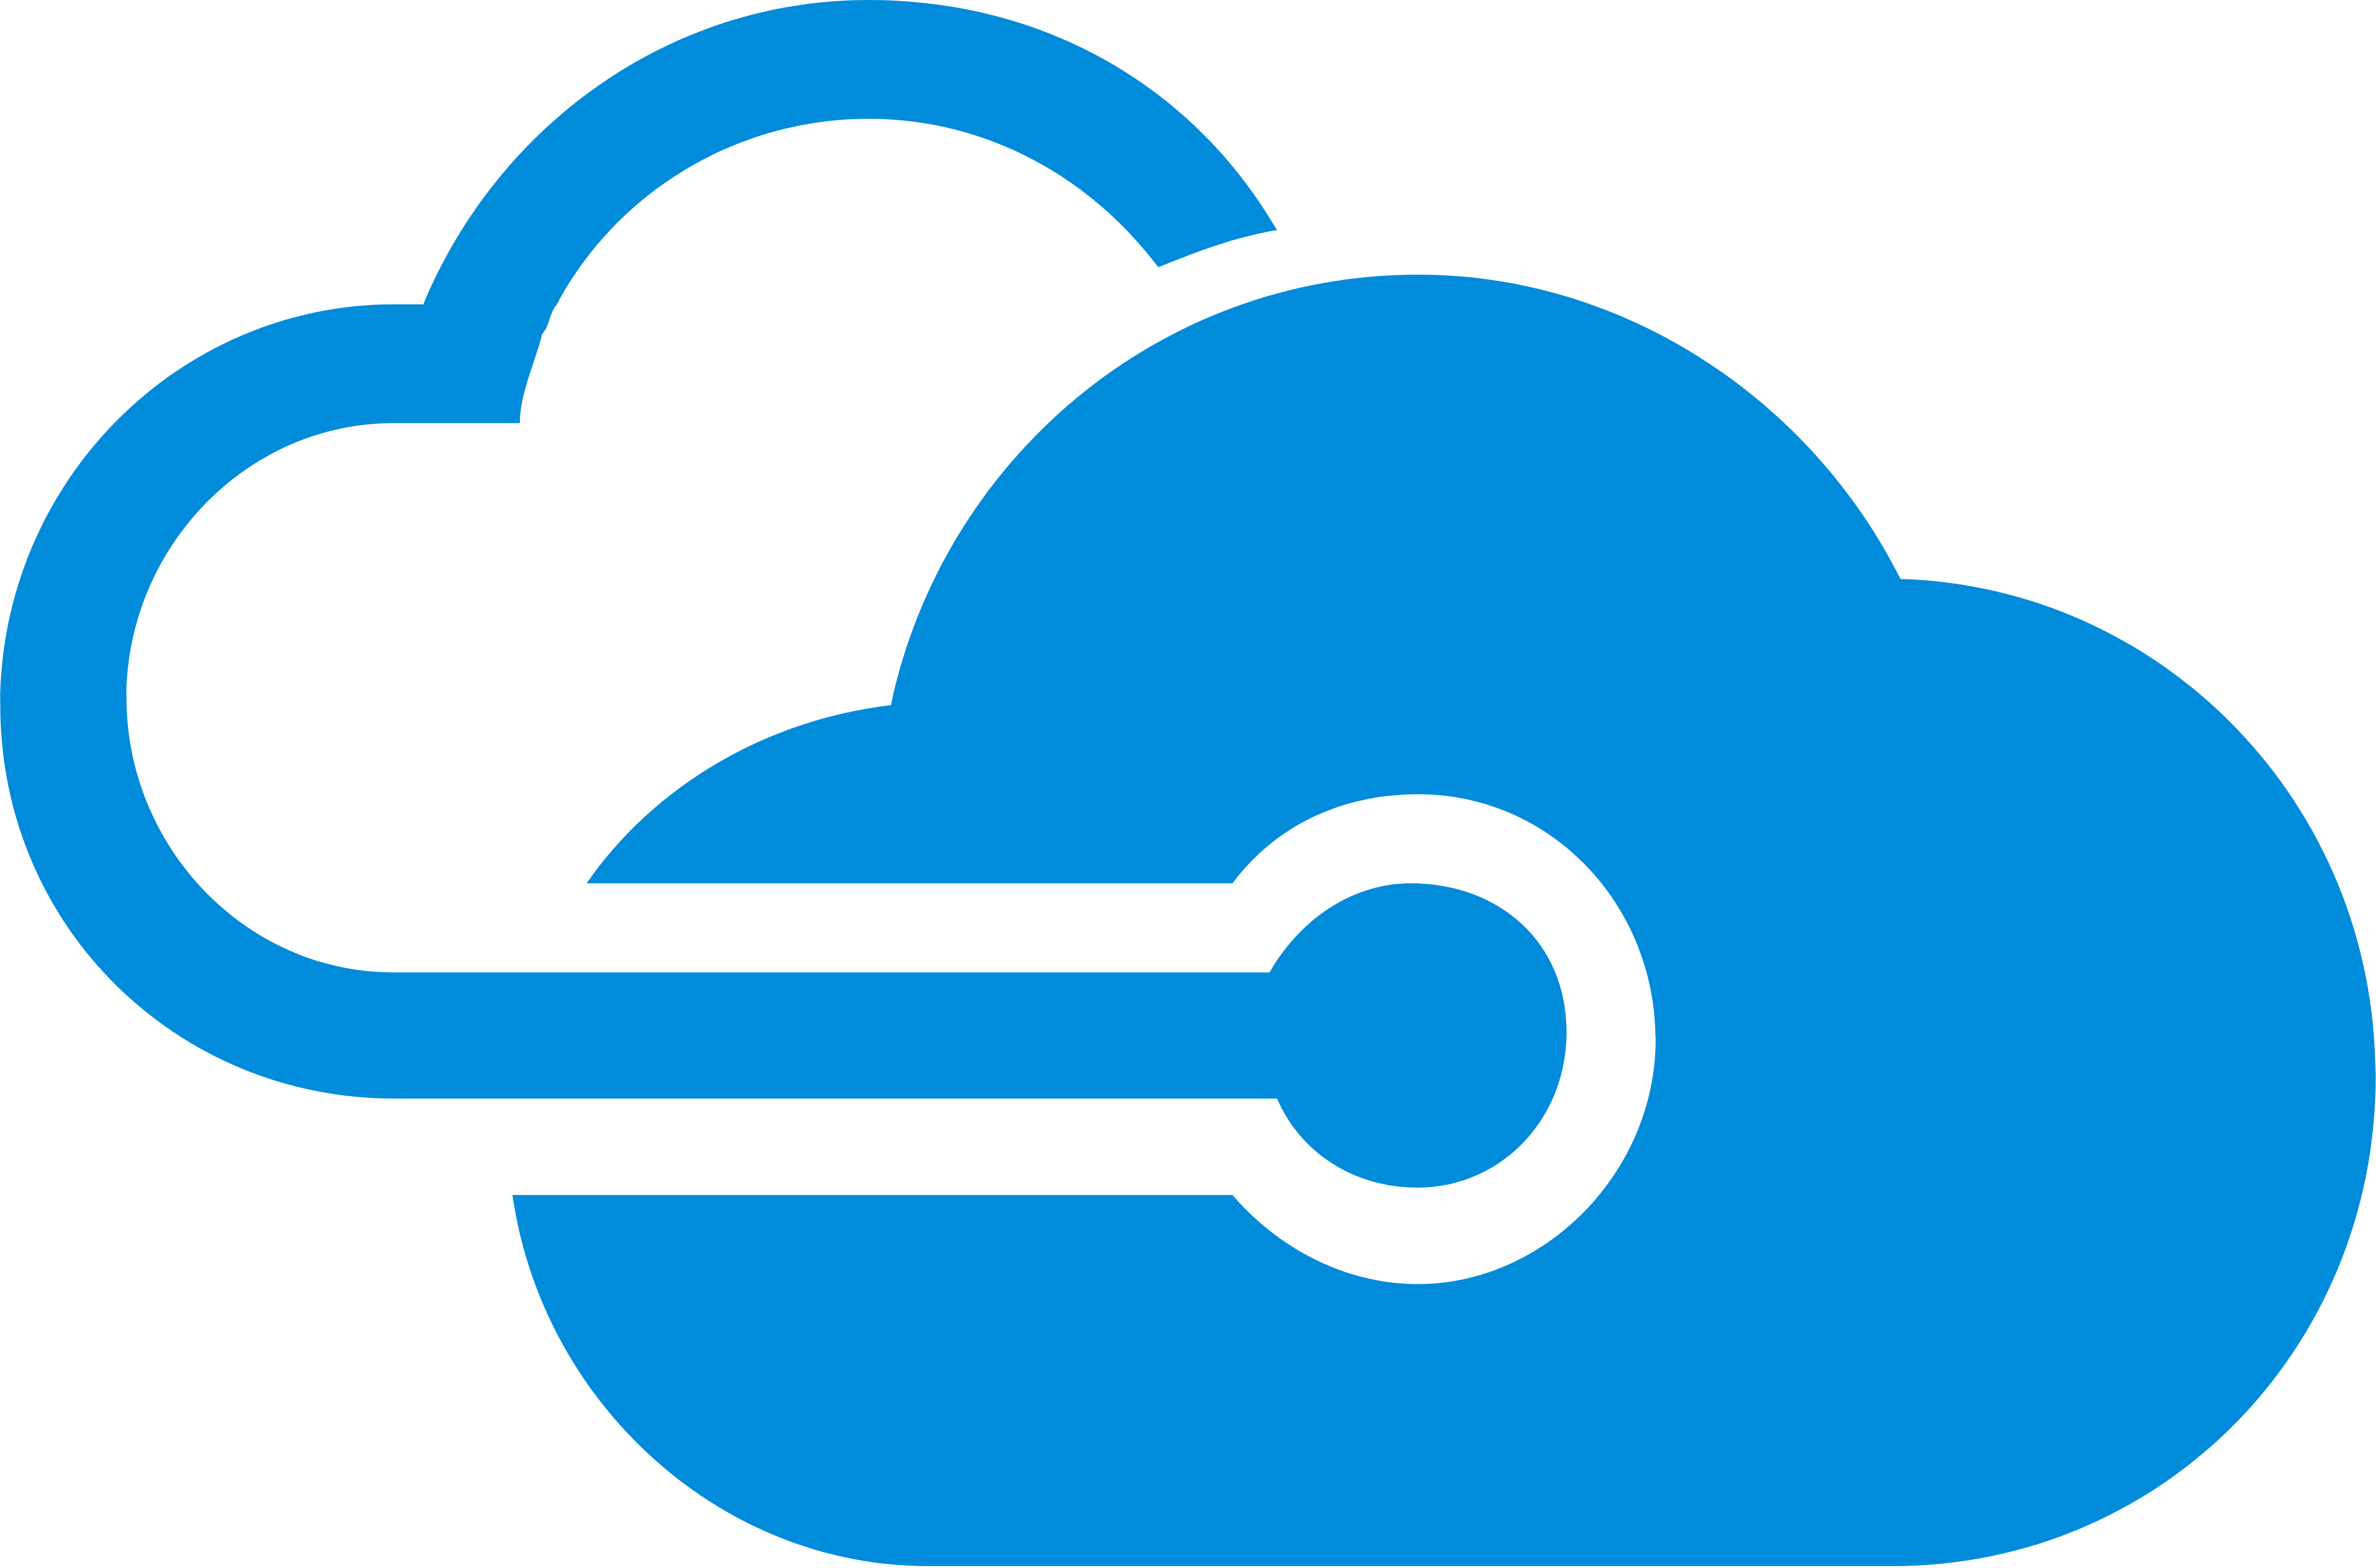 Microsoft Azure – Logos Download